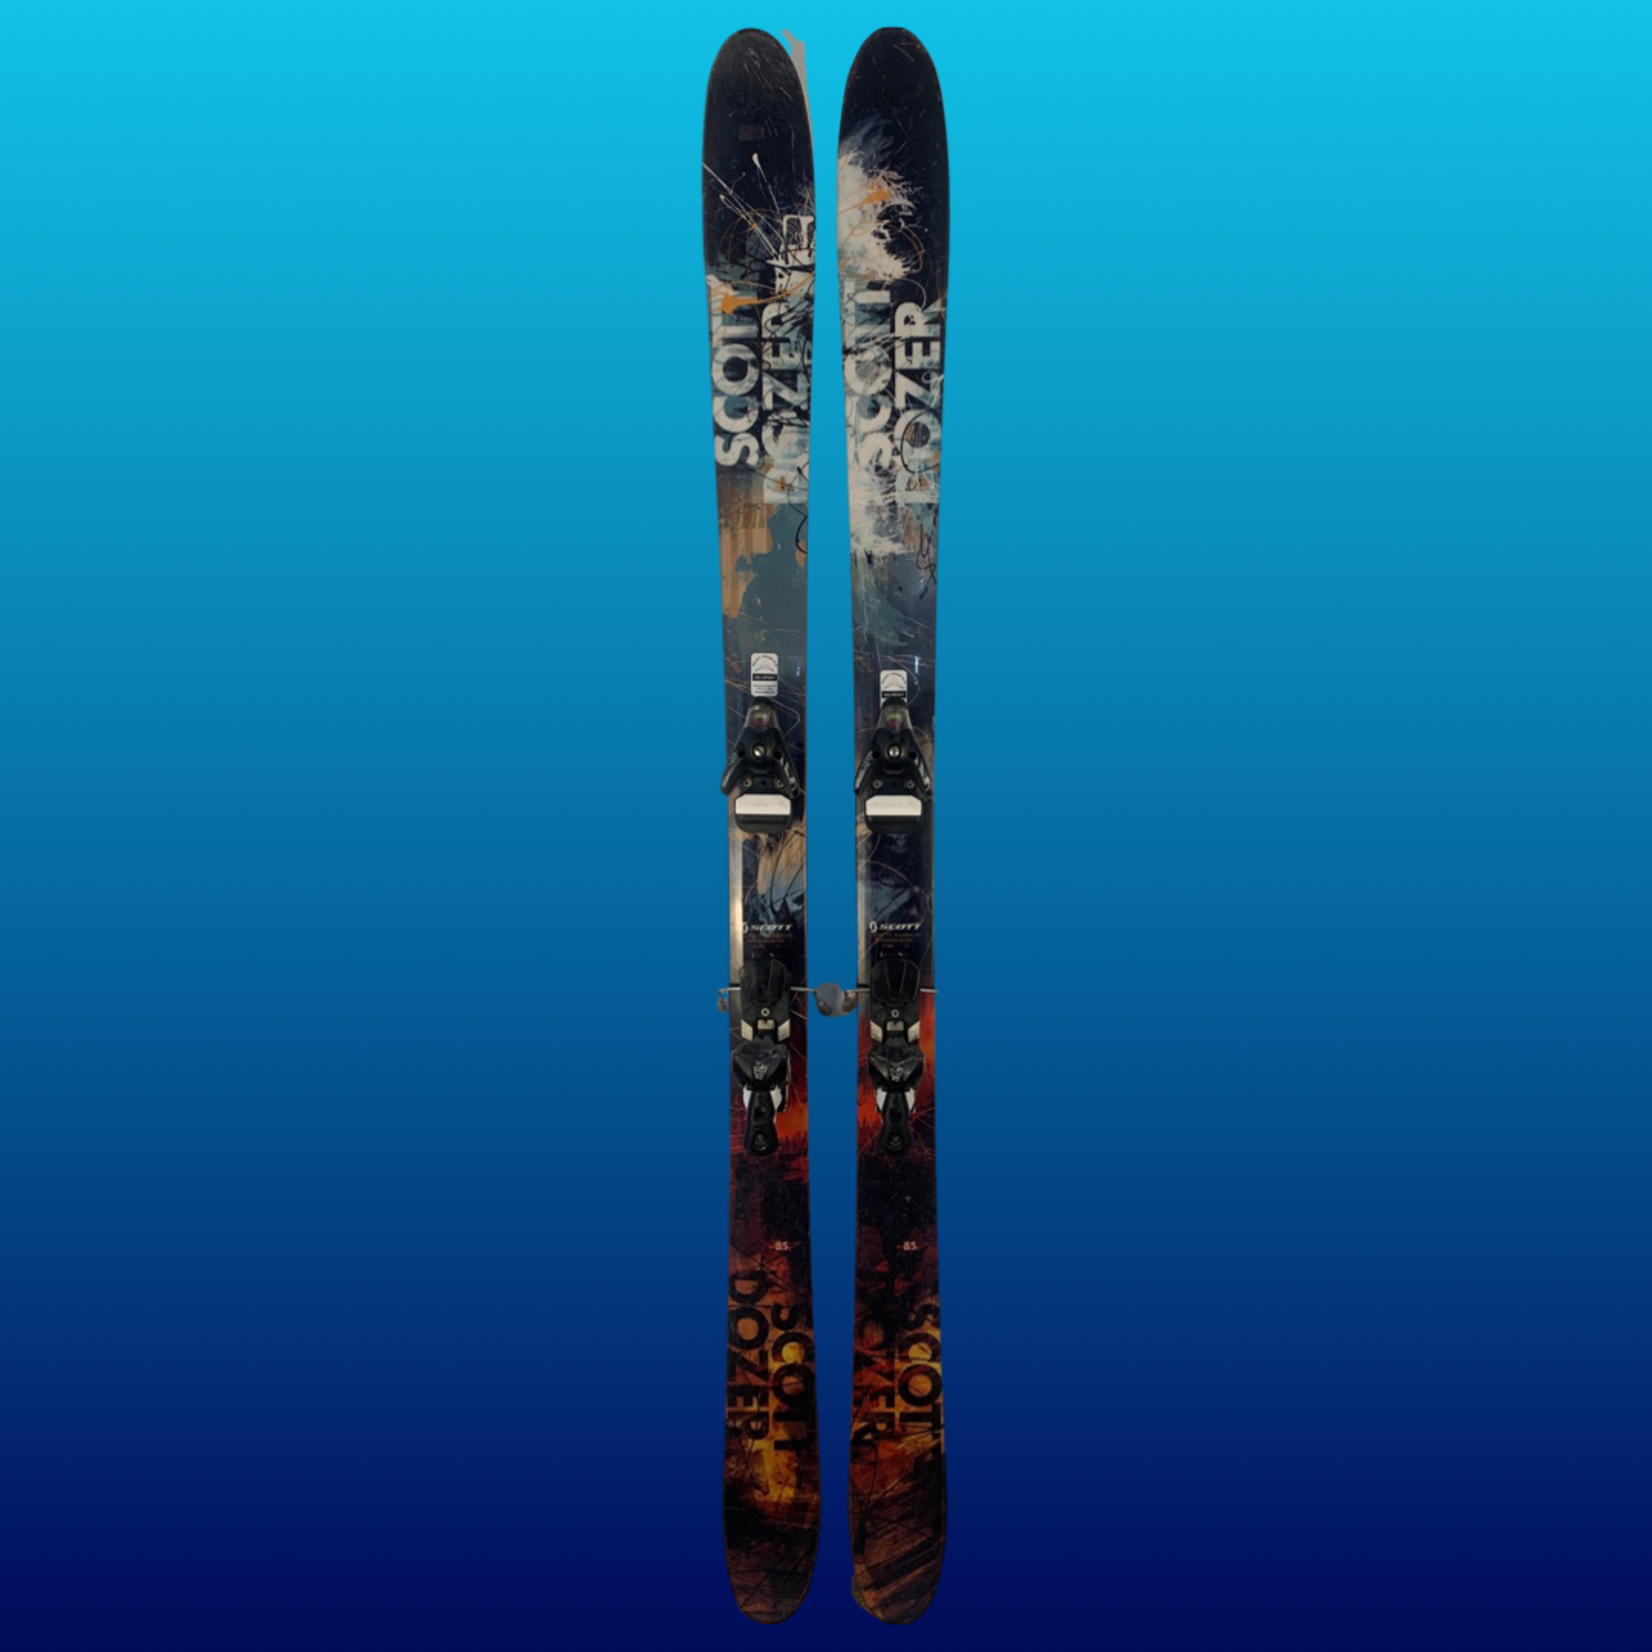 Scott Scott Dozer Skis + STH 16 Bindings, Size 185cm, Set for 28.0 Boots